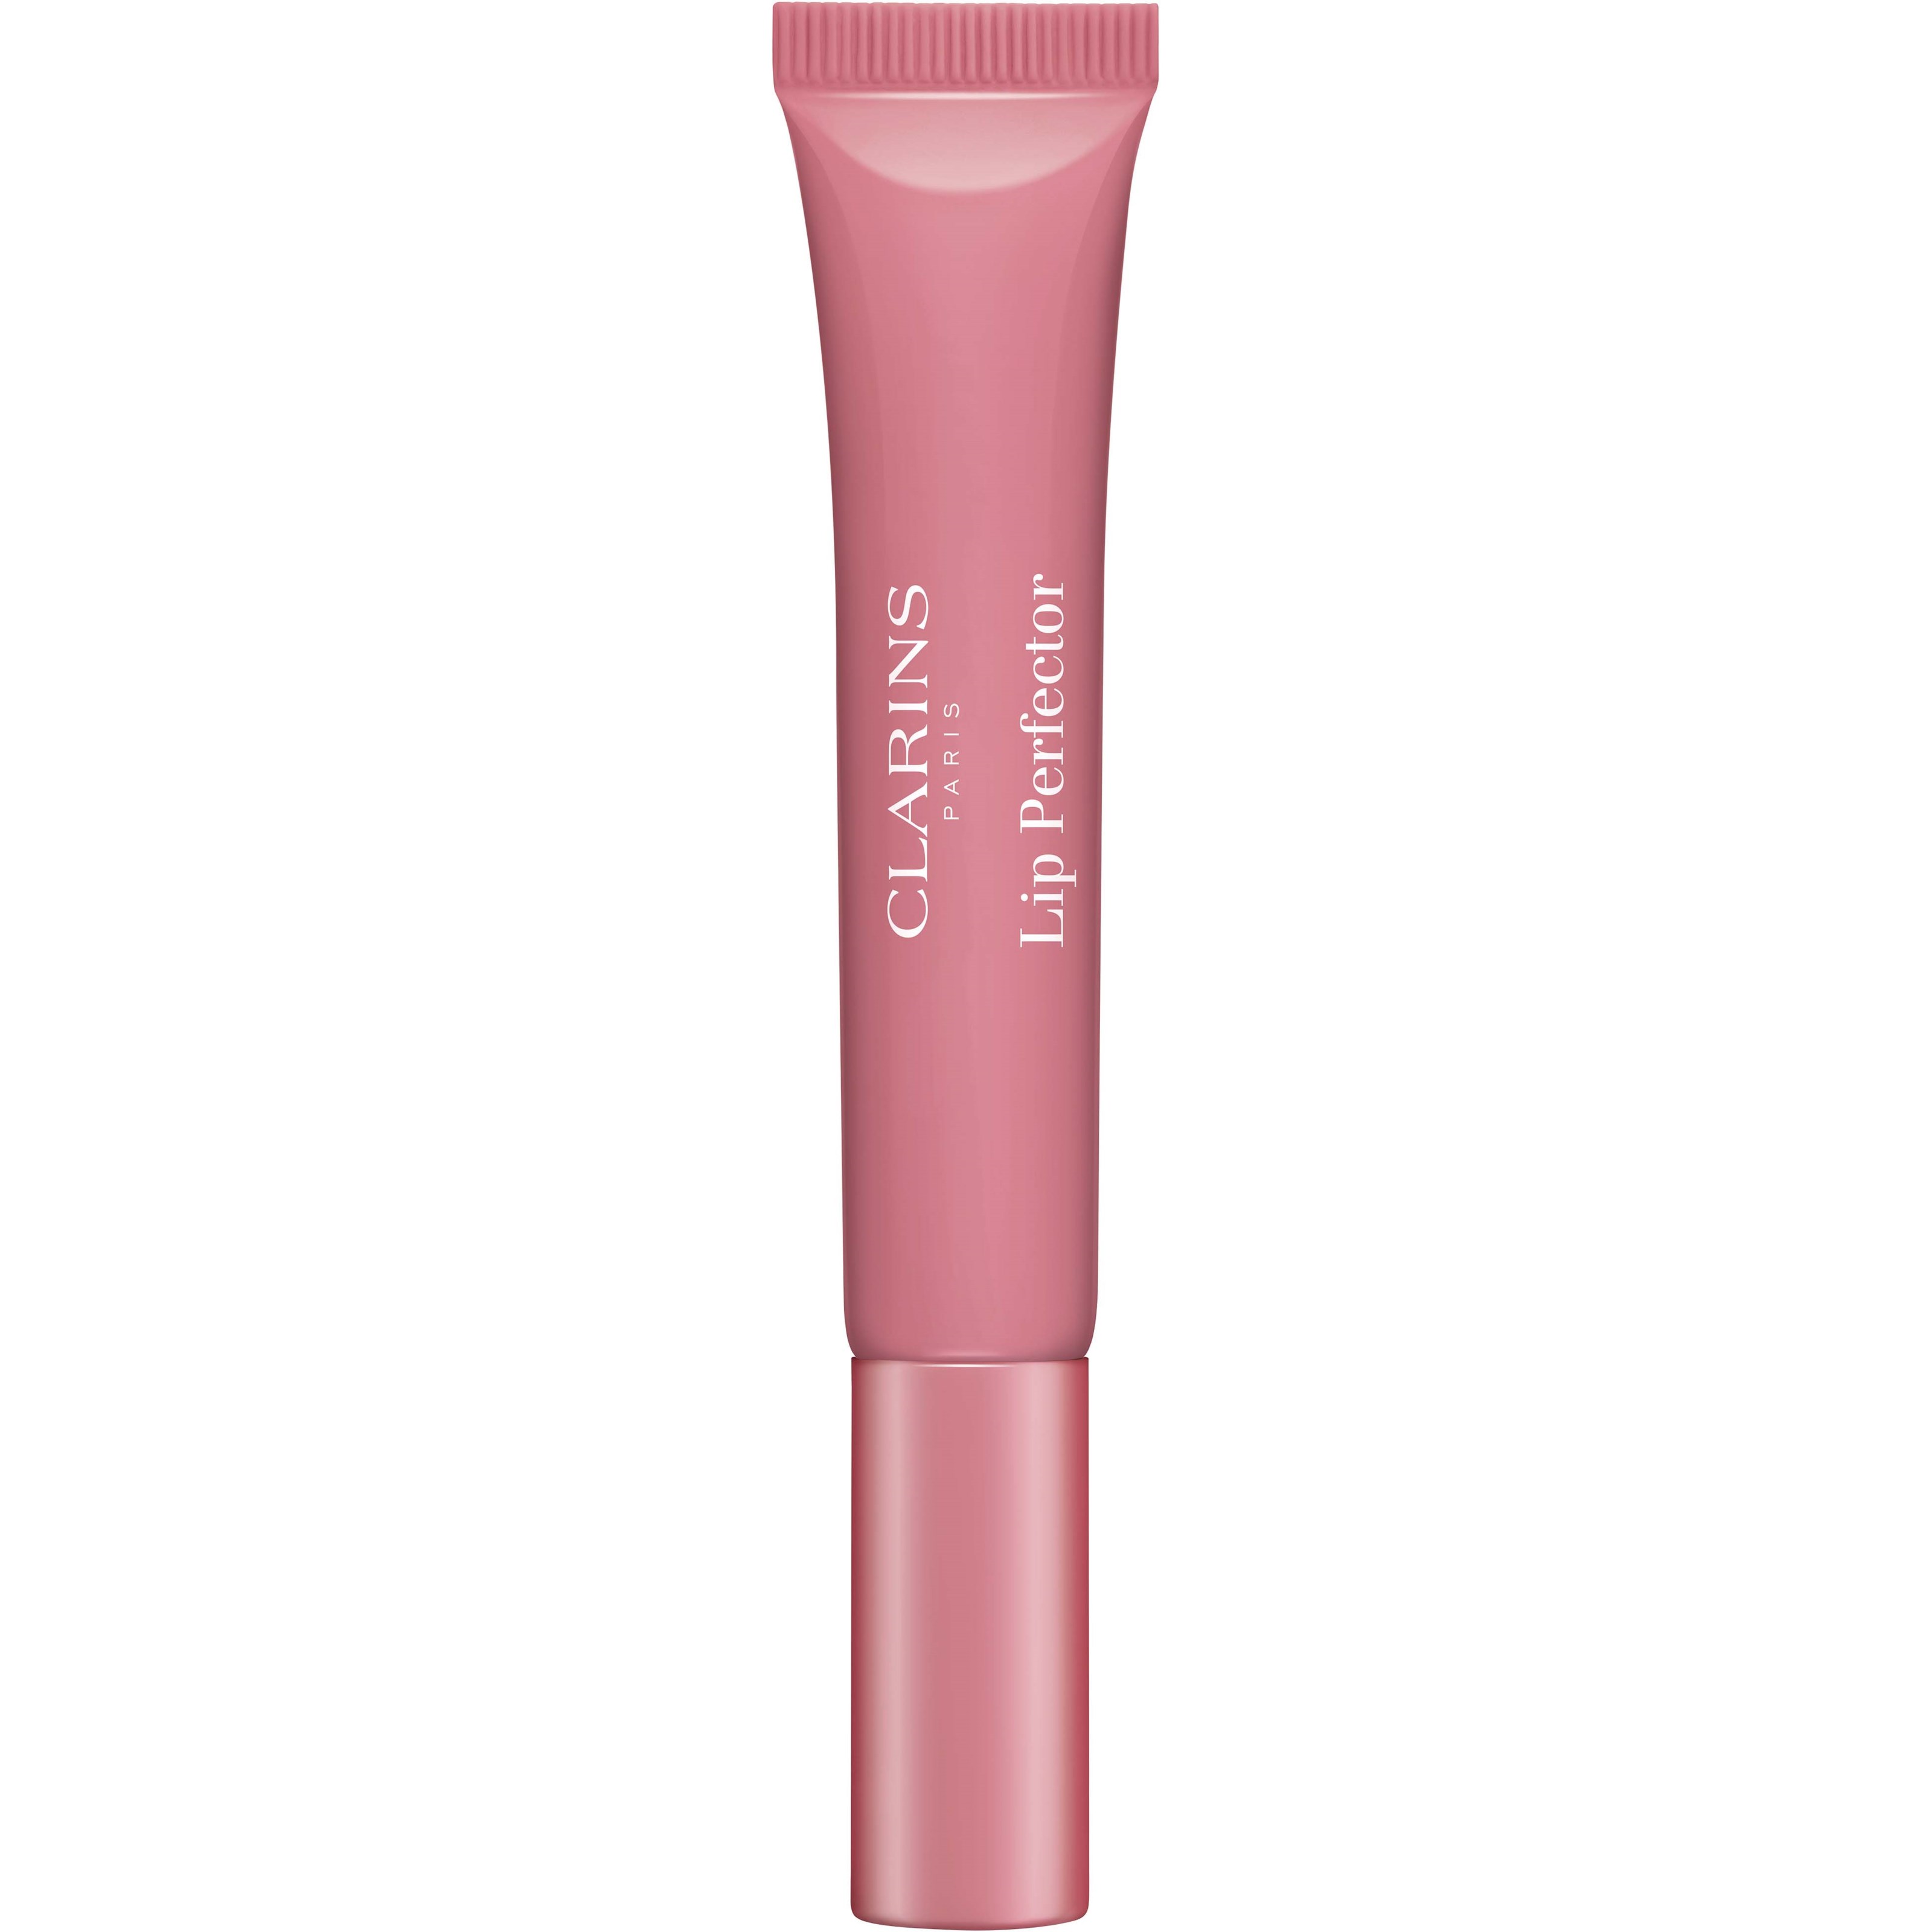 Bilde av Clarins Natural Lip Perfector 07 Toffee Pink Shimmer